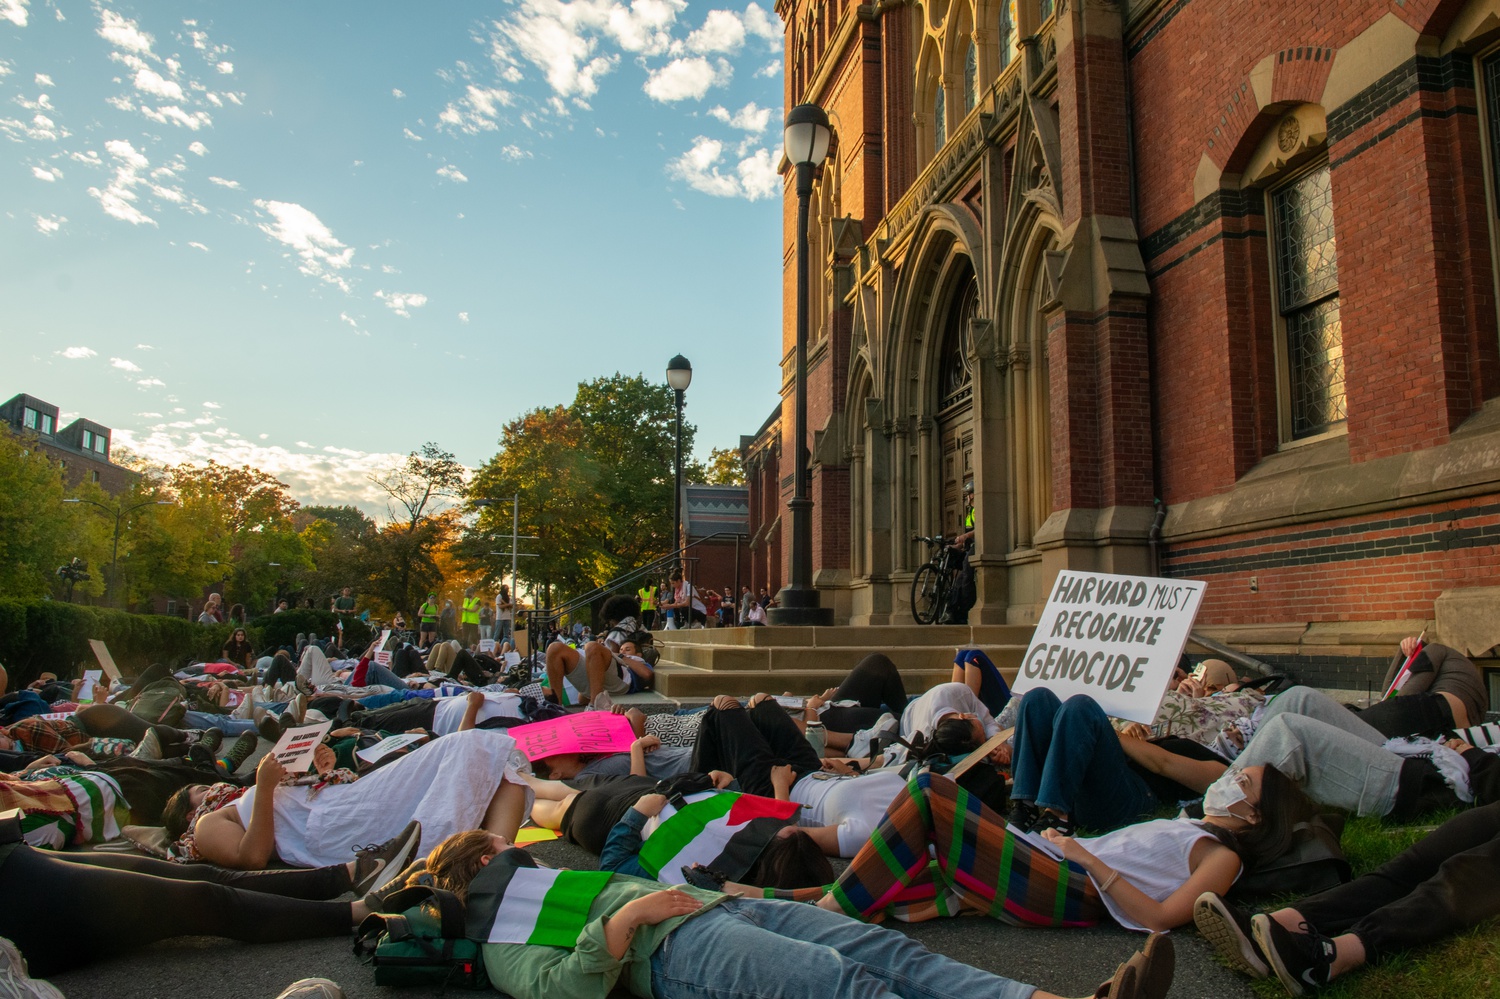 Hơn 100 sinh viên Harvard biểu tình nằm trước Tòa nhà Tưởng niệm (Memorial Hall) vào cuối tháng 10/2023 nhằm phản đối việc nhà trường thiếu sự ủng hộ đối với sinh viên Palestine trong cuộc xung đột đang diễn ra giữa Israel và Gaza. Nguồn: thecrimson.com